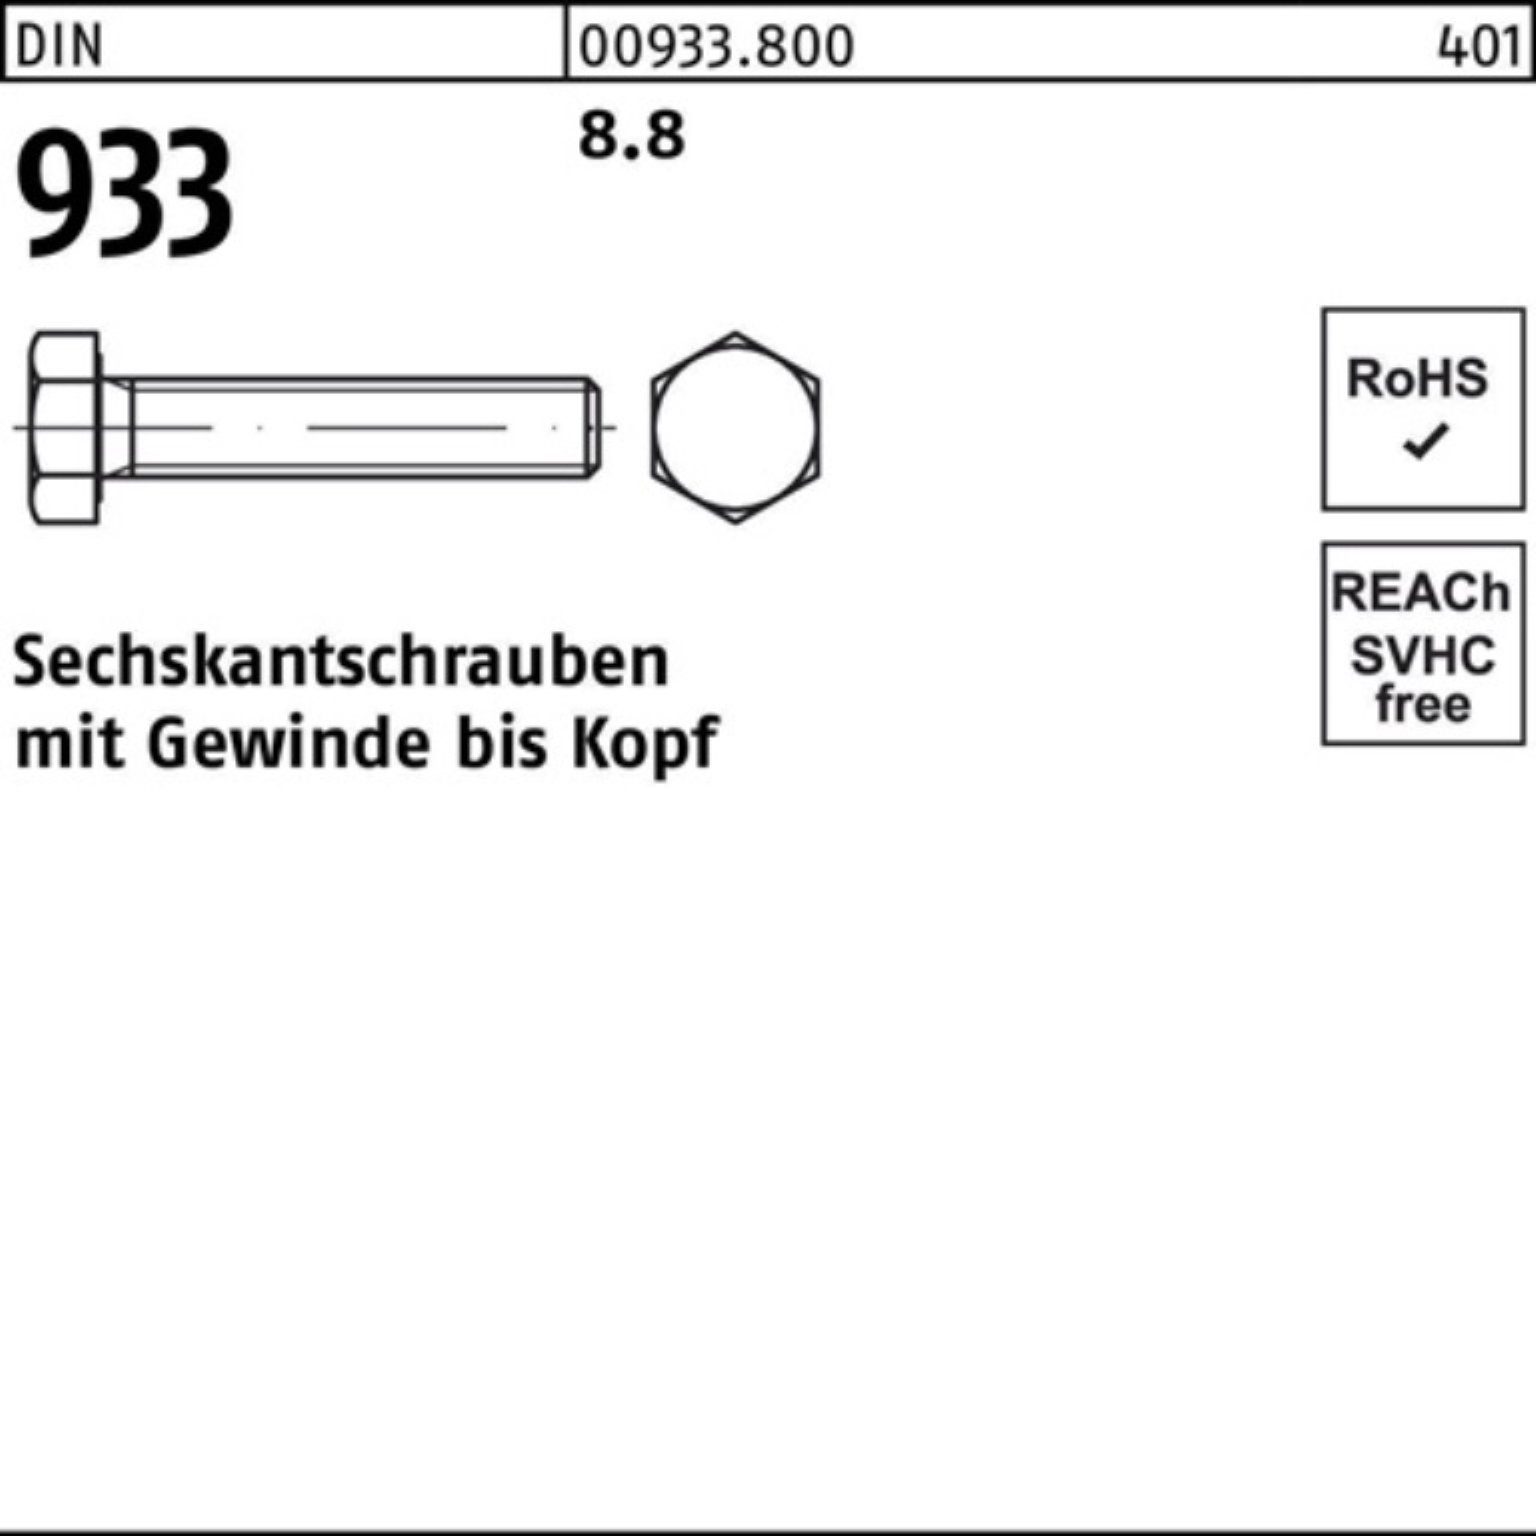 Sechskantschraube VG DIN Stück 200 M39x Reyher Sechskantschraube 1 933 100er 8.8 DIN Pack 933